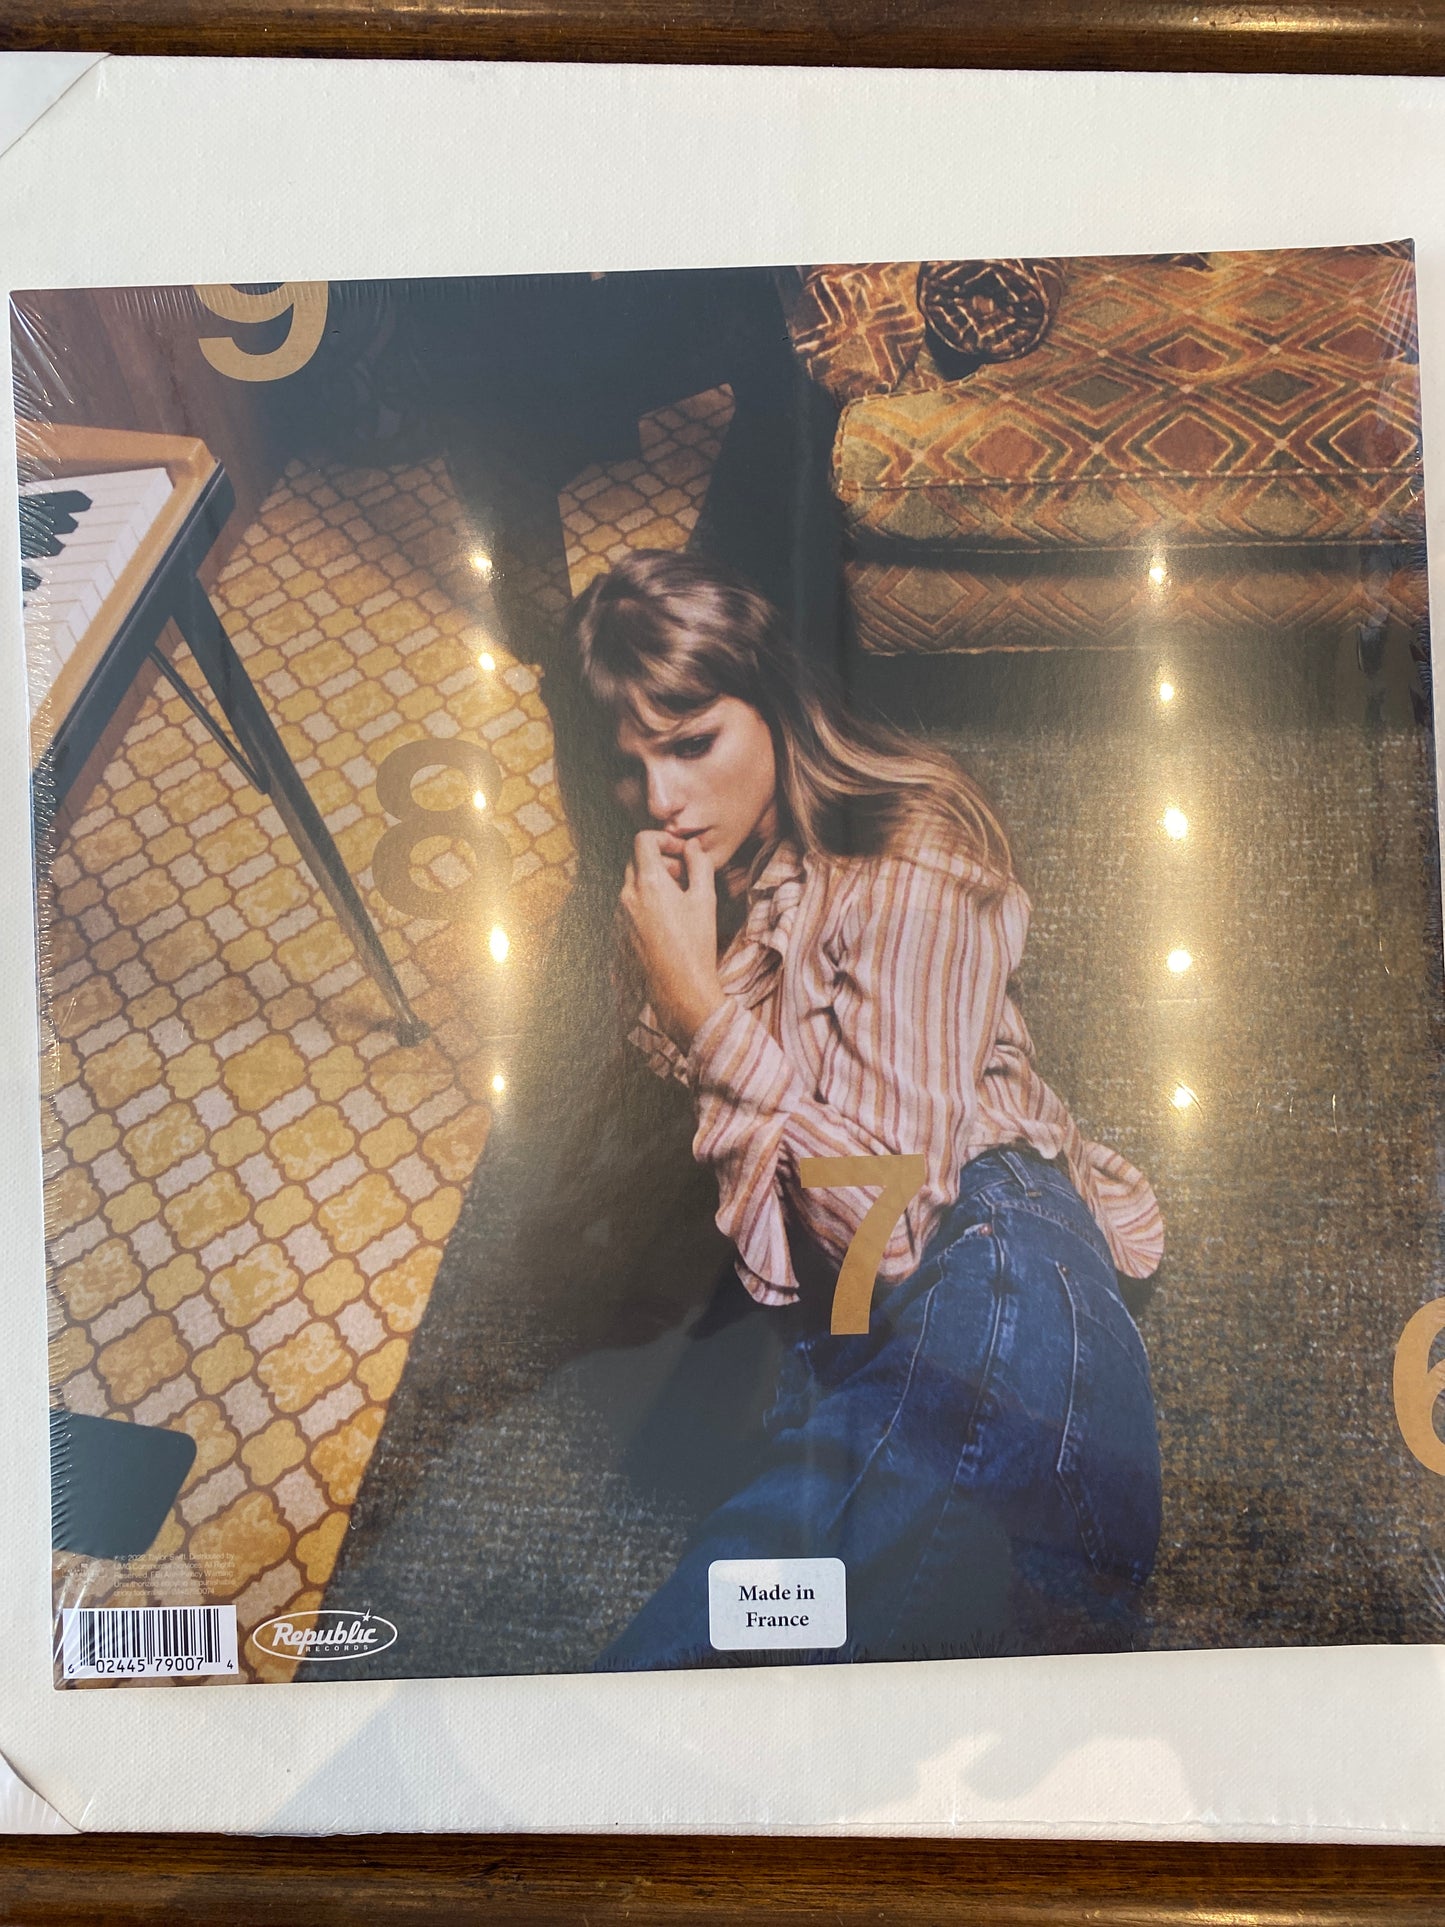 Taylor Swift - Midnights - Mahogany Edition Vinyl LP